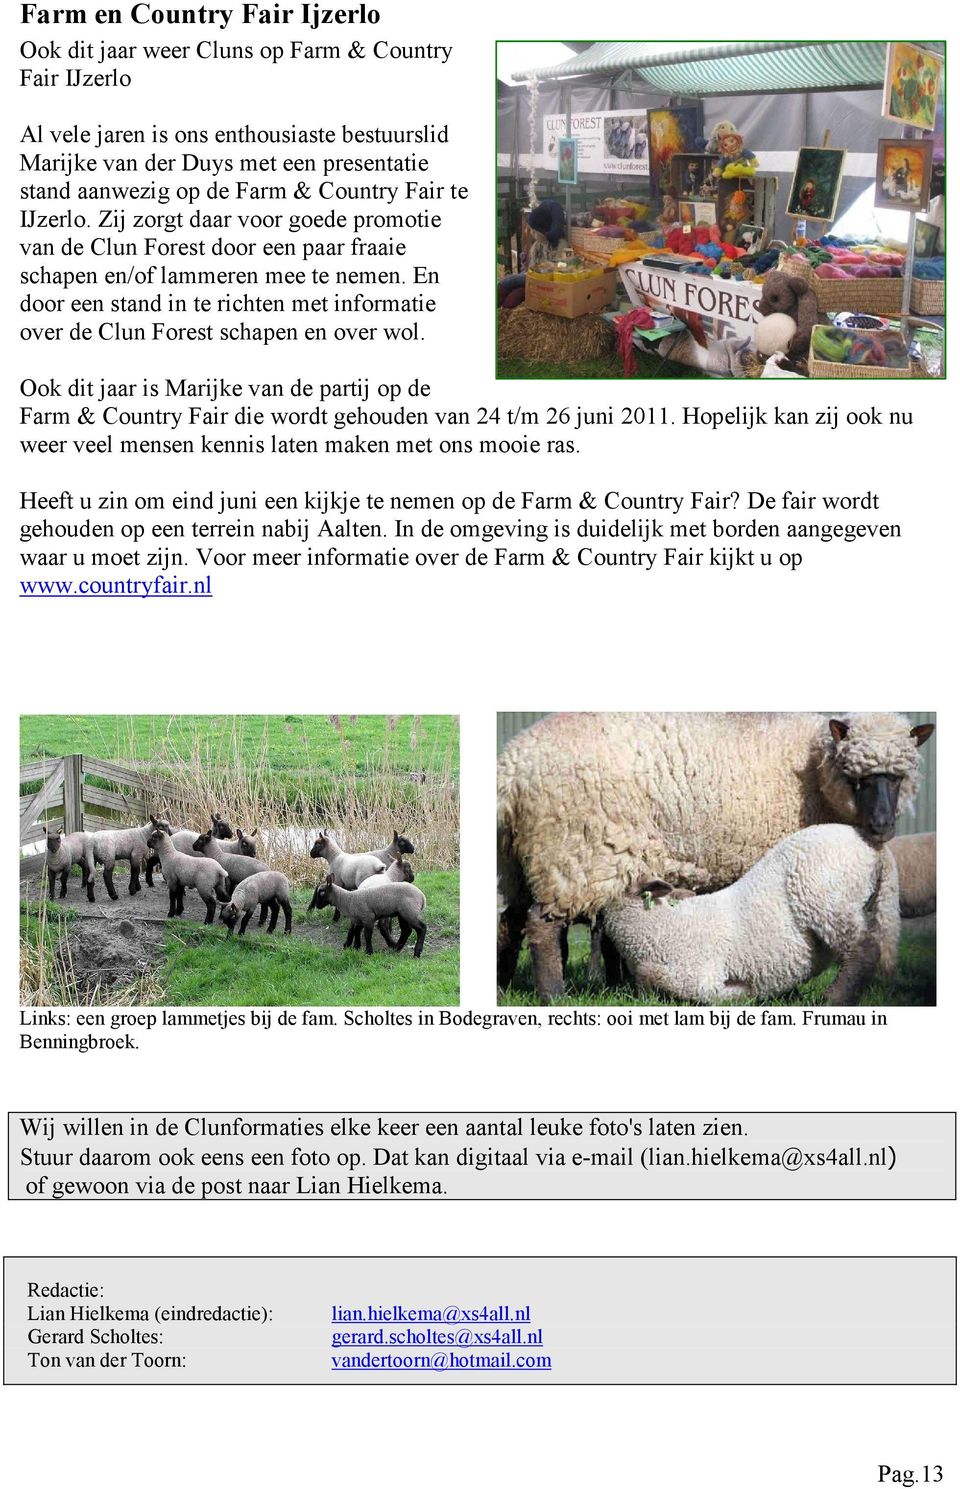 En door een stand in te richten met informatie over de Clun Forest schapen en over wol. Ook dit jaar is Marijke van de partij op de Farm & Country Fair die wordt gehouden van 24 t/m 26 juni 2011.